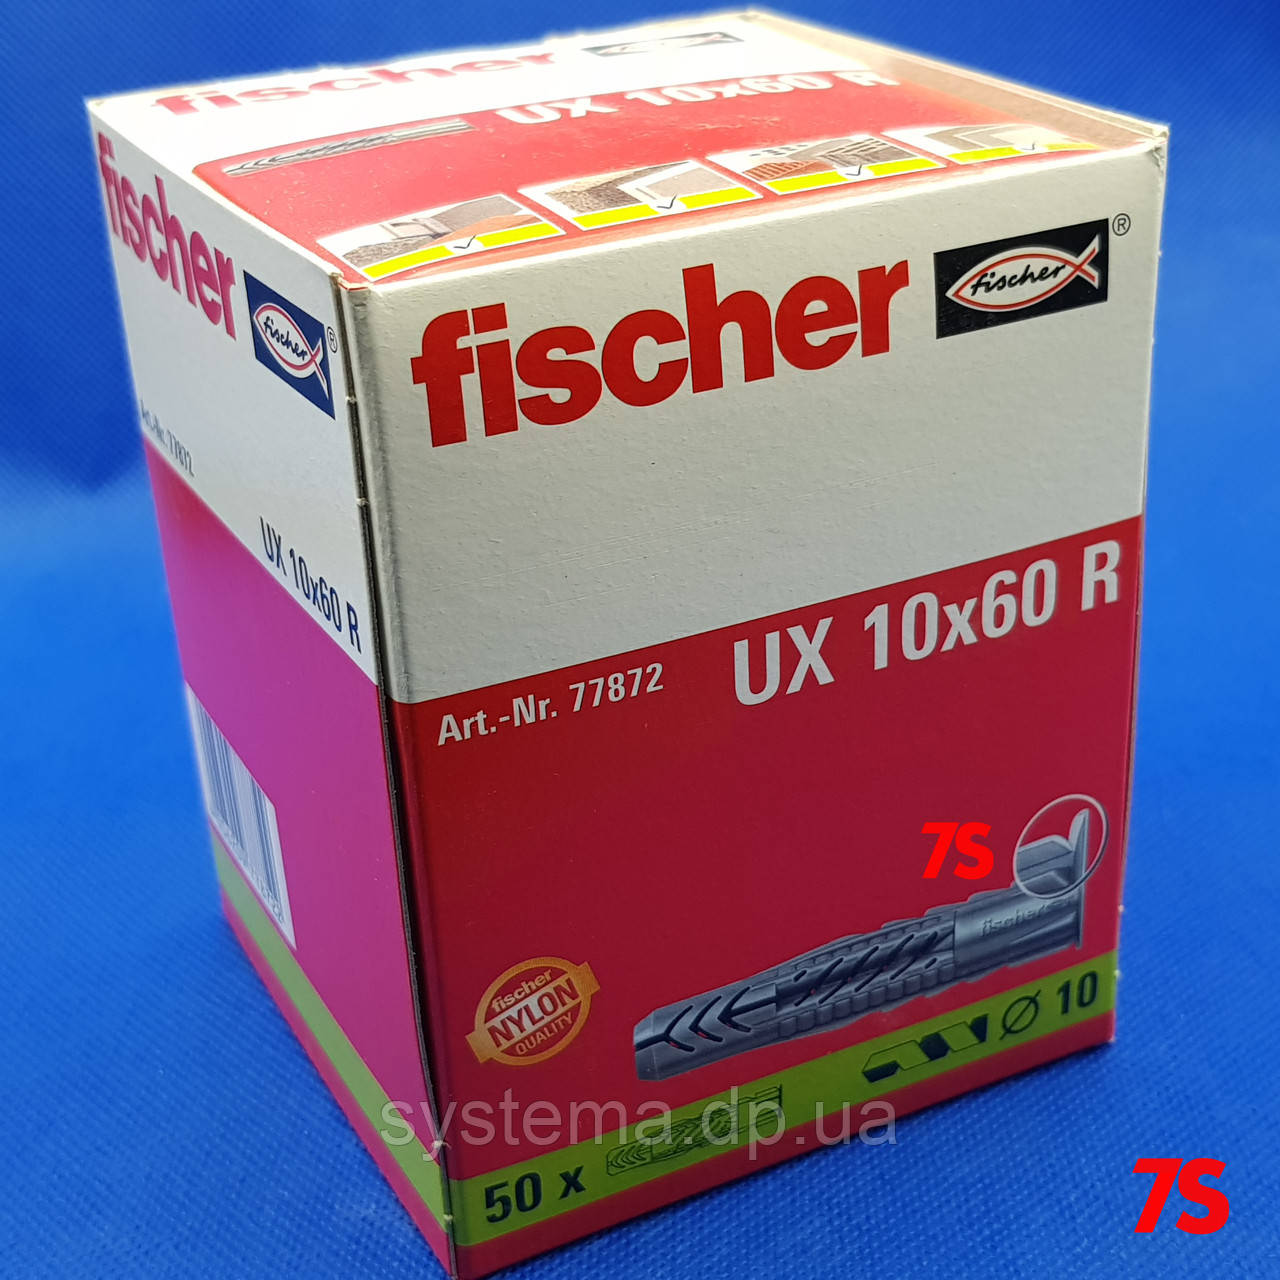 Fischer UX 10 x 60 R - Нейлоновий універсальний дюбель, упаковка 50 шт.